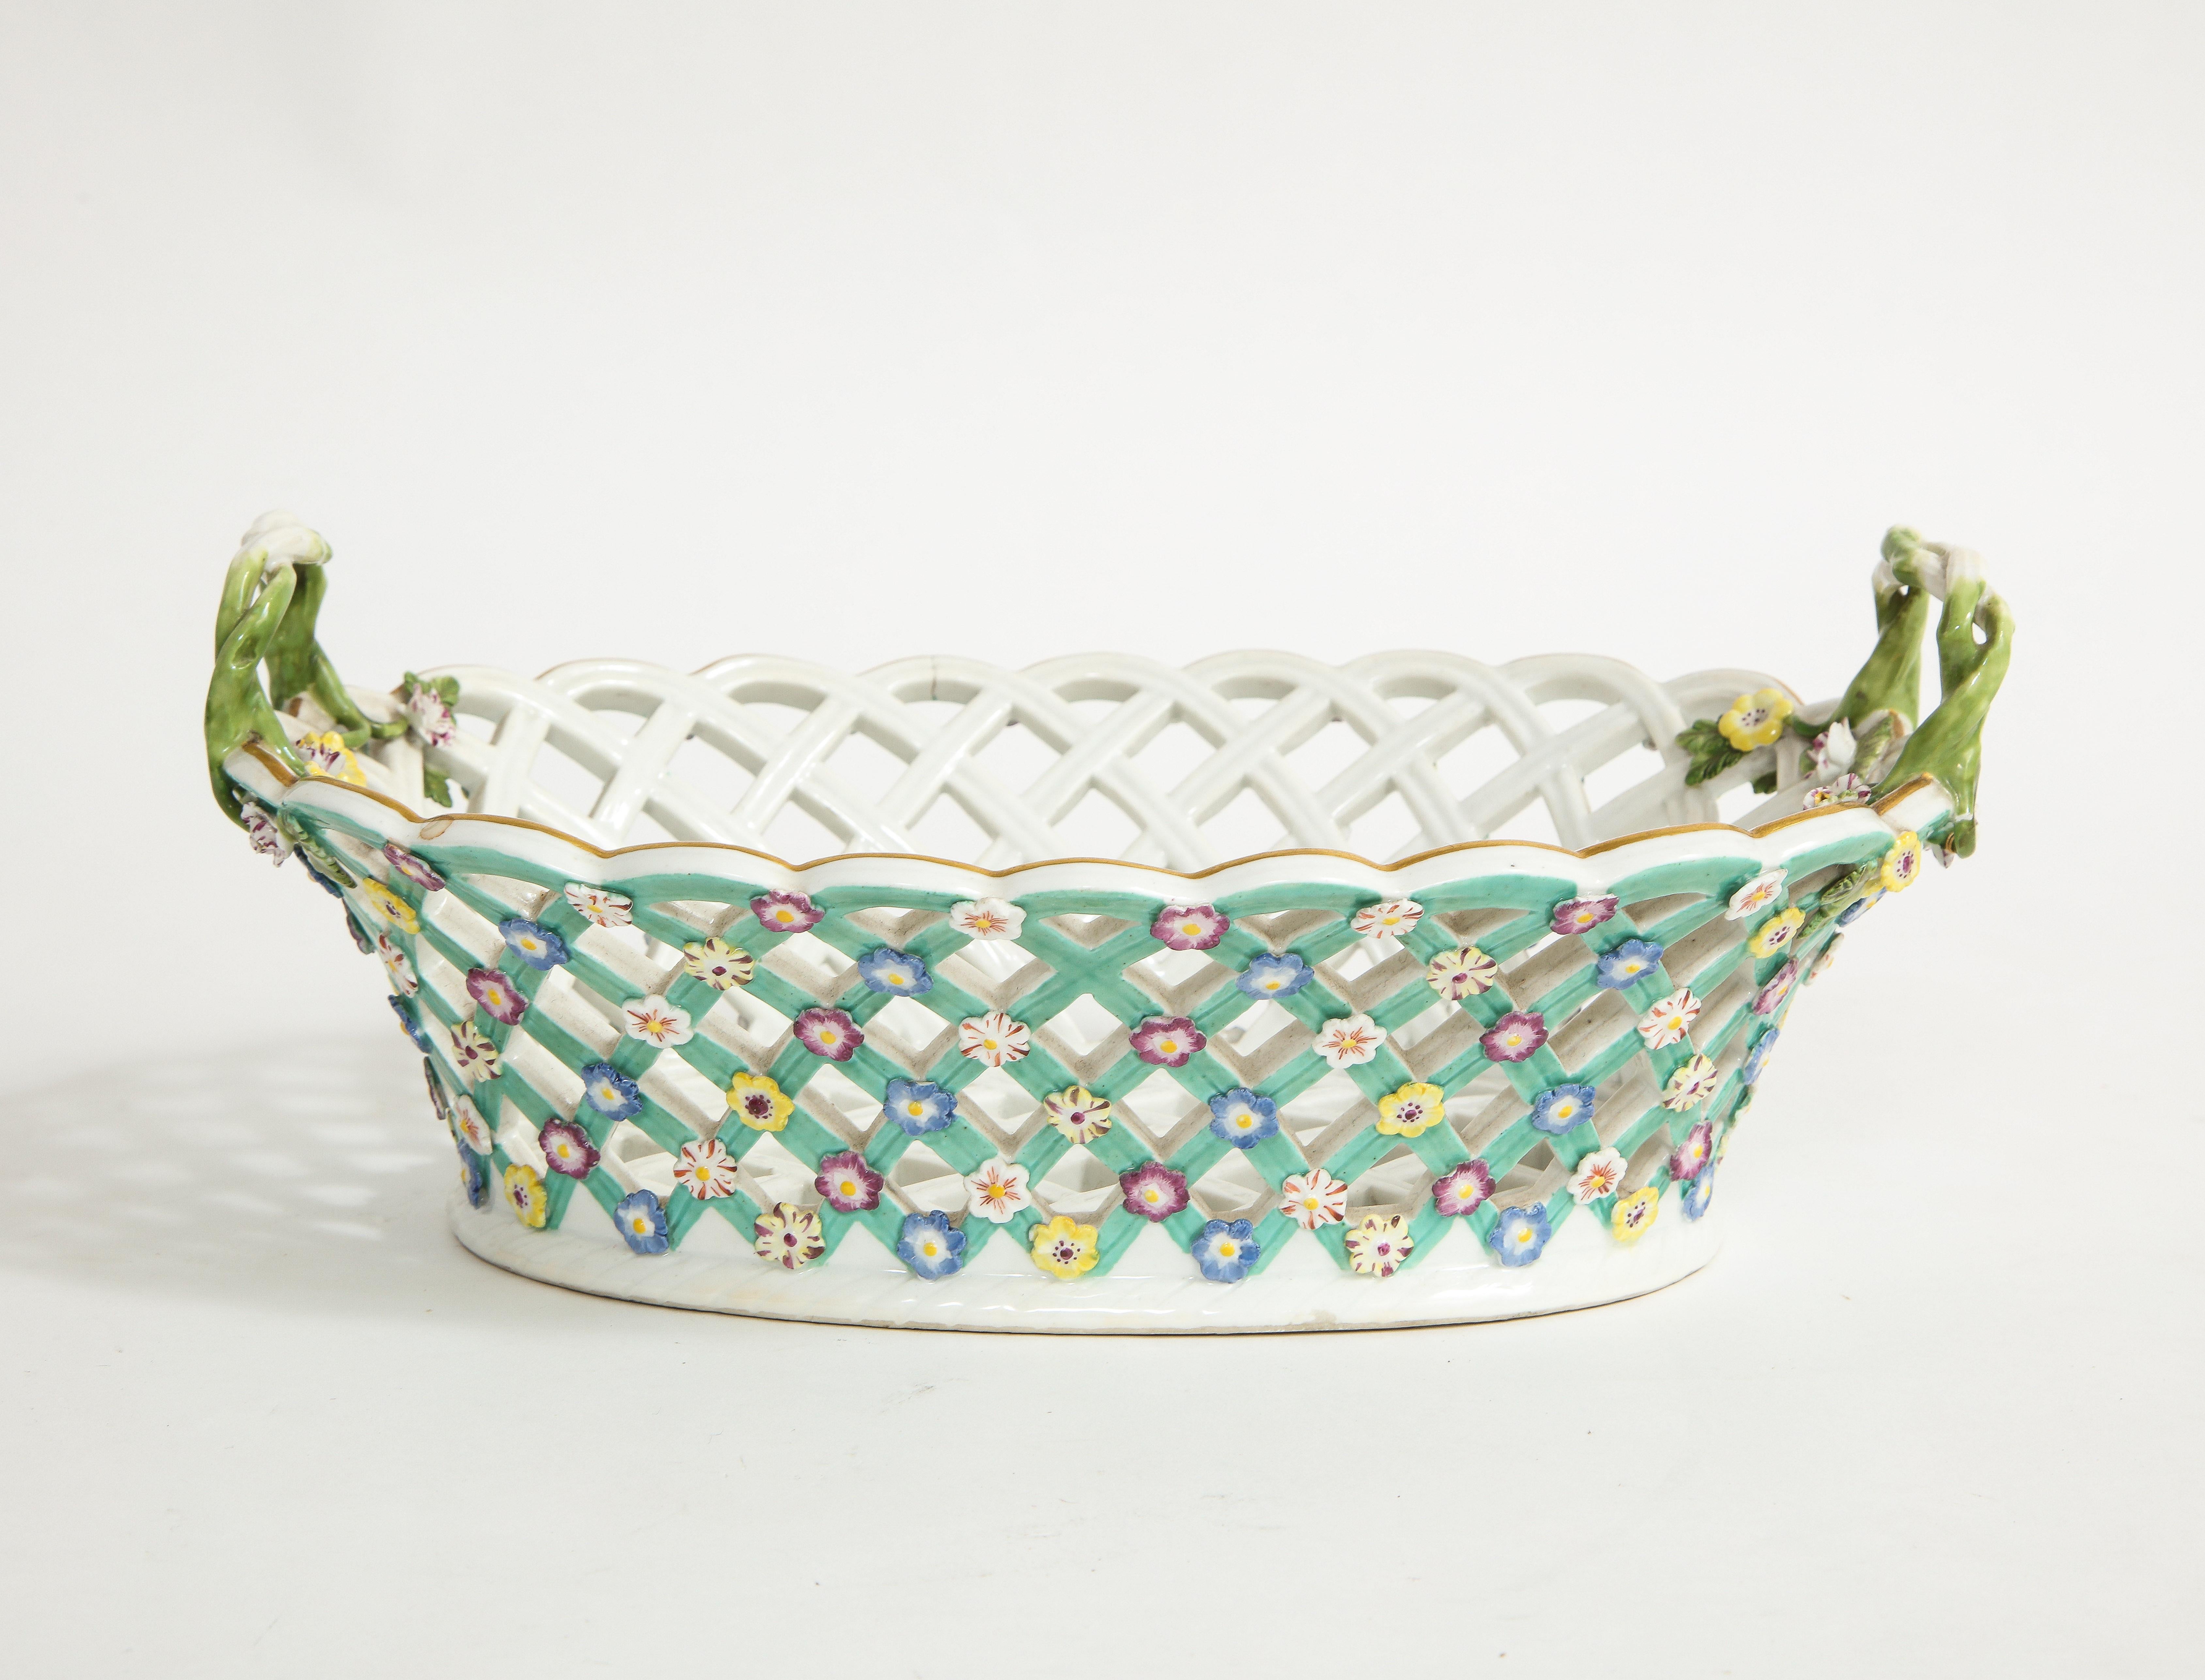 Eine unglaubliche 18. Jahrhundert Meissen Porzellan Gitter filigrane netzartige Korb mit Ranken Griffe und verkrustete Blumen. Dieses Stück ist sehr selten, vor allem in diesem Zustand mit handgemalten applizierten Blumen und Türkisblau auf der